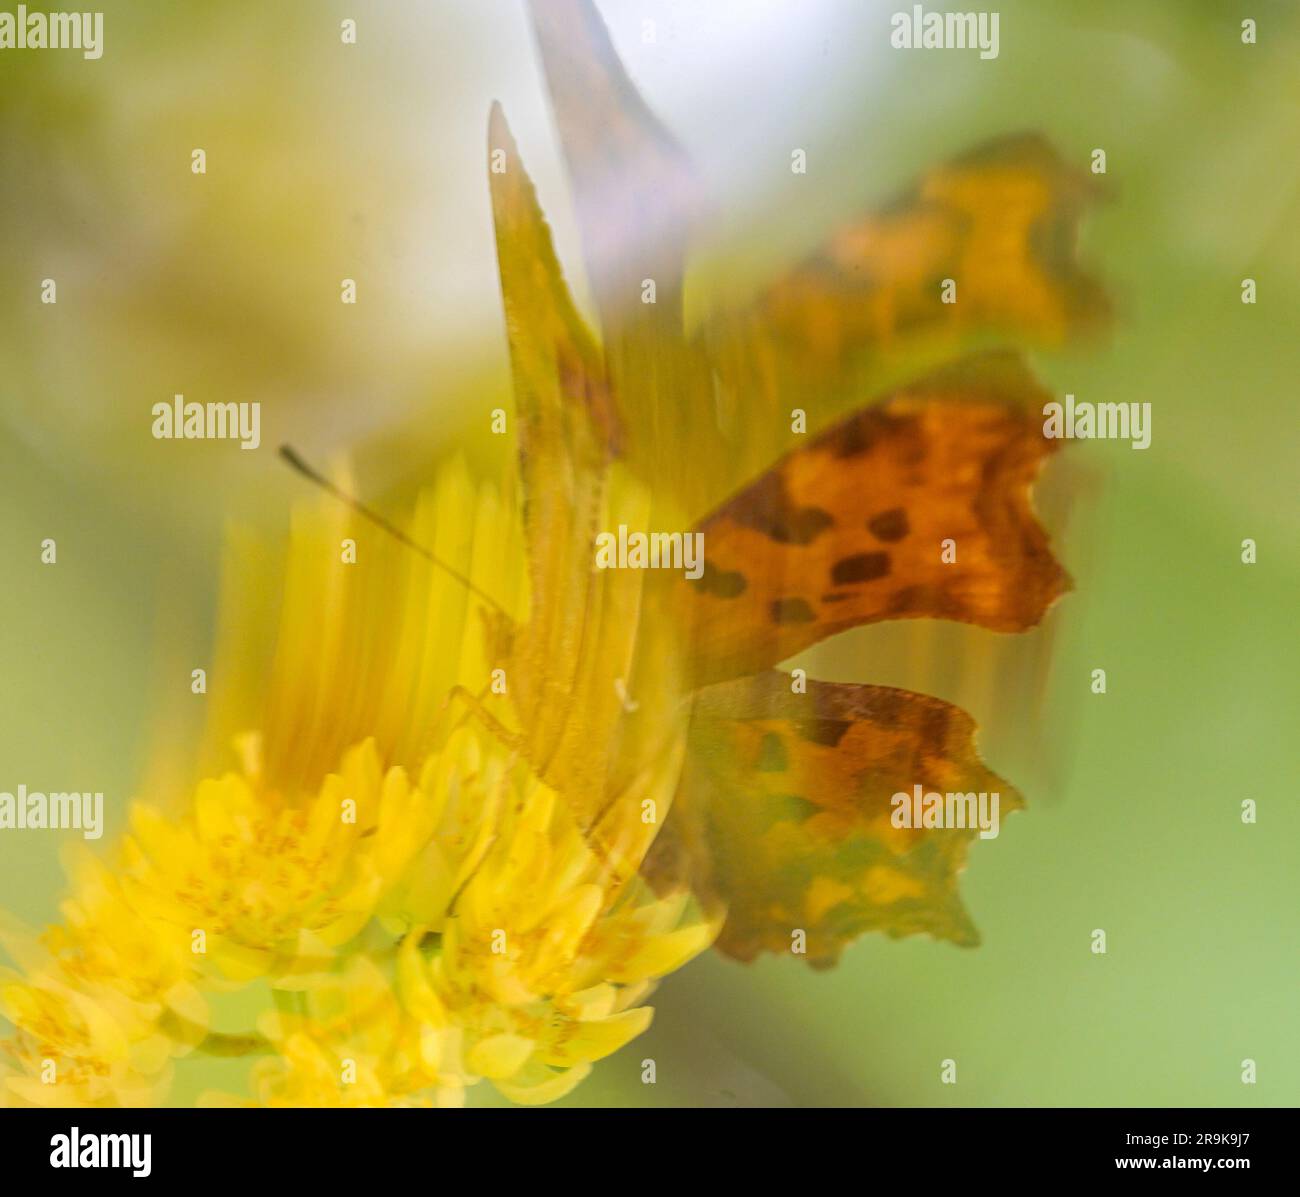 Strandja mountians Bulgarie 27 juin 2023: Soir nature couleurs tout en se nourrissant sur le nectar, les papillons ramassent involontairement le pollen sur leurs jambes pollinisent de nombreux types de fleurs sauvages, :Clifford Norton Alamy Banque D'Images